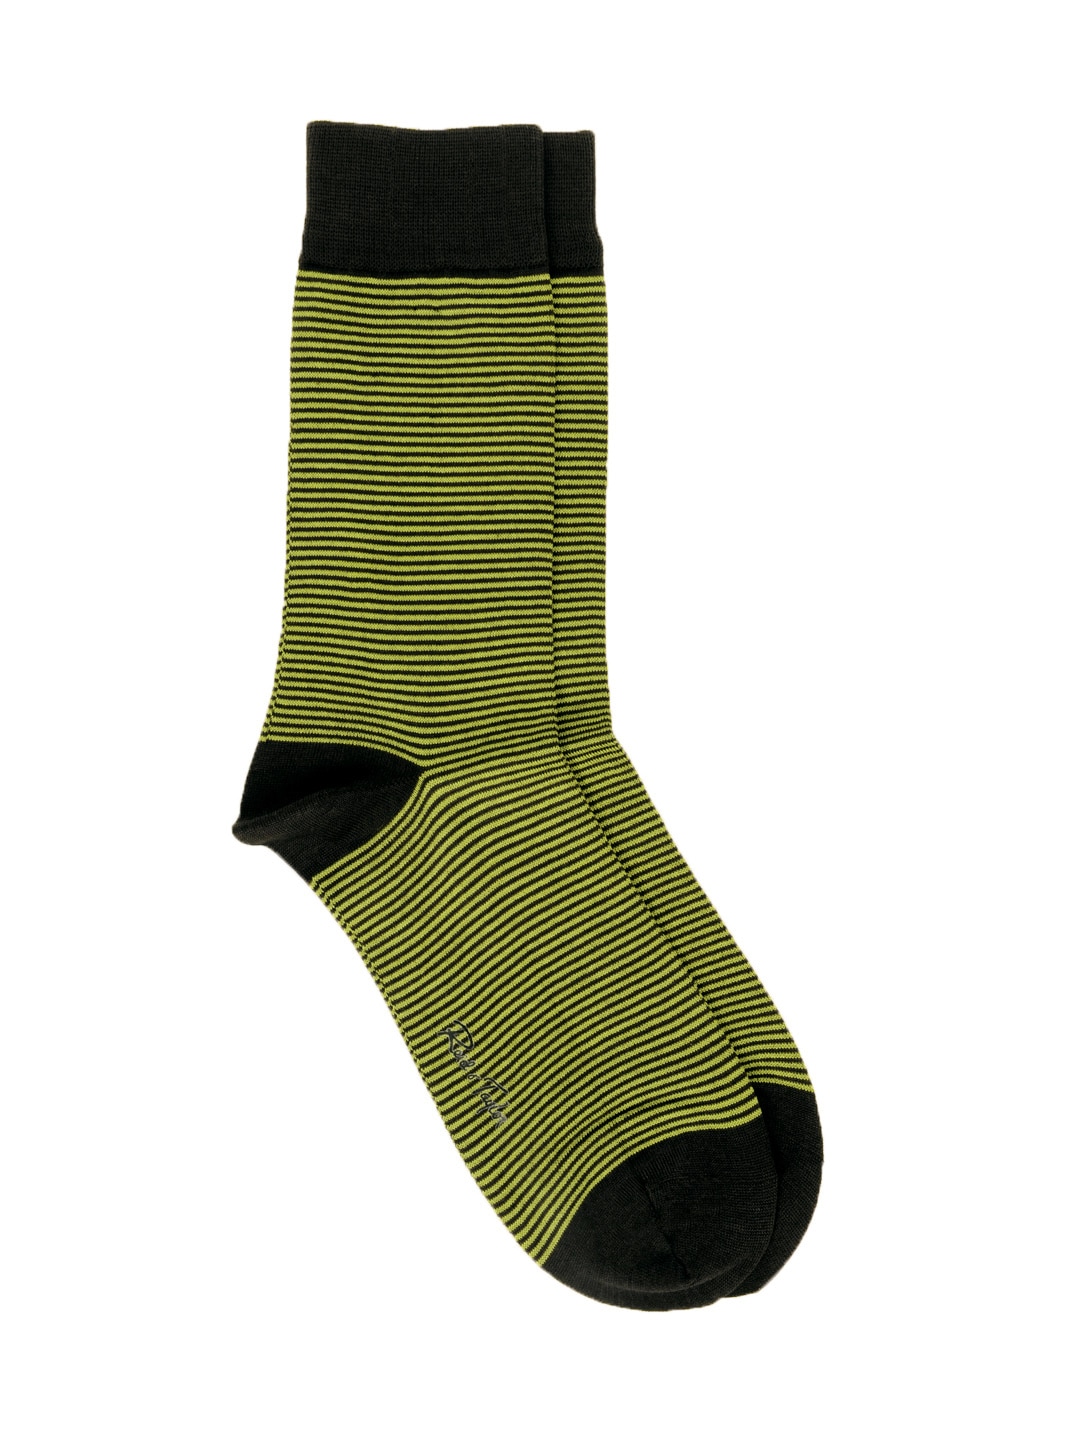 Reid & Taylor Men Green Socks